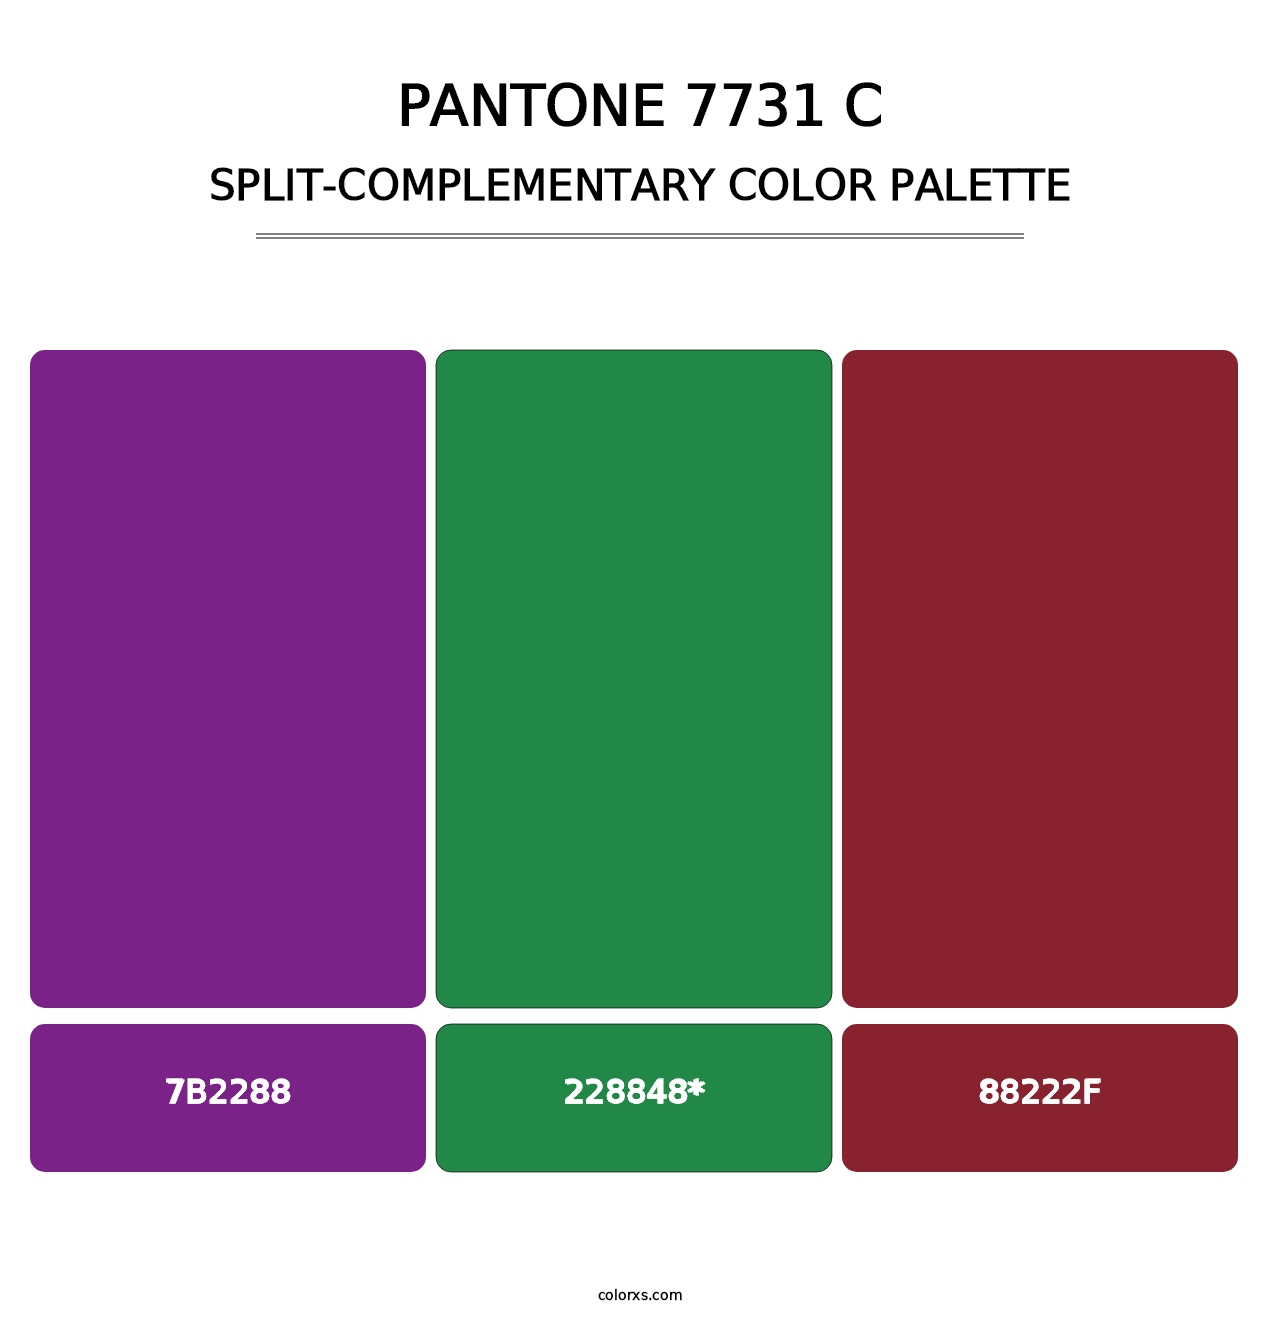 PANTONE 7731 C - Split-Complementary Color Palette